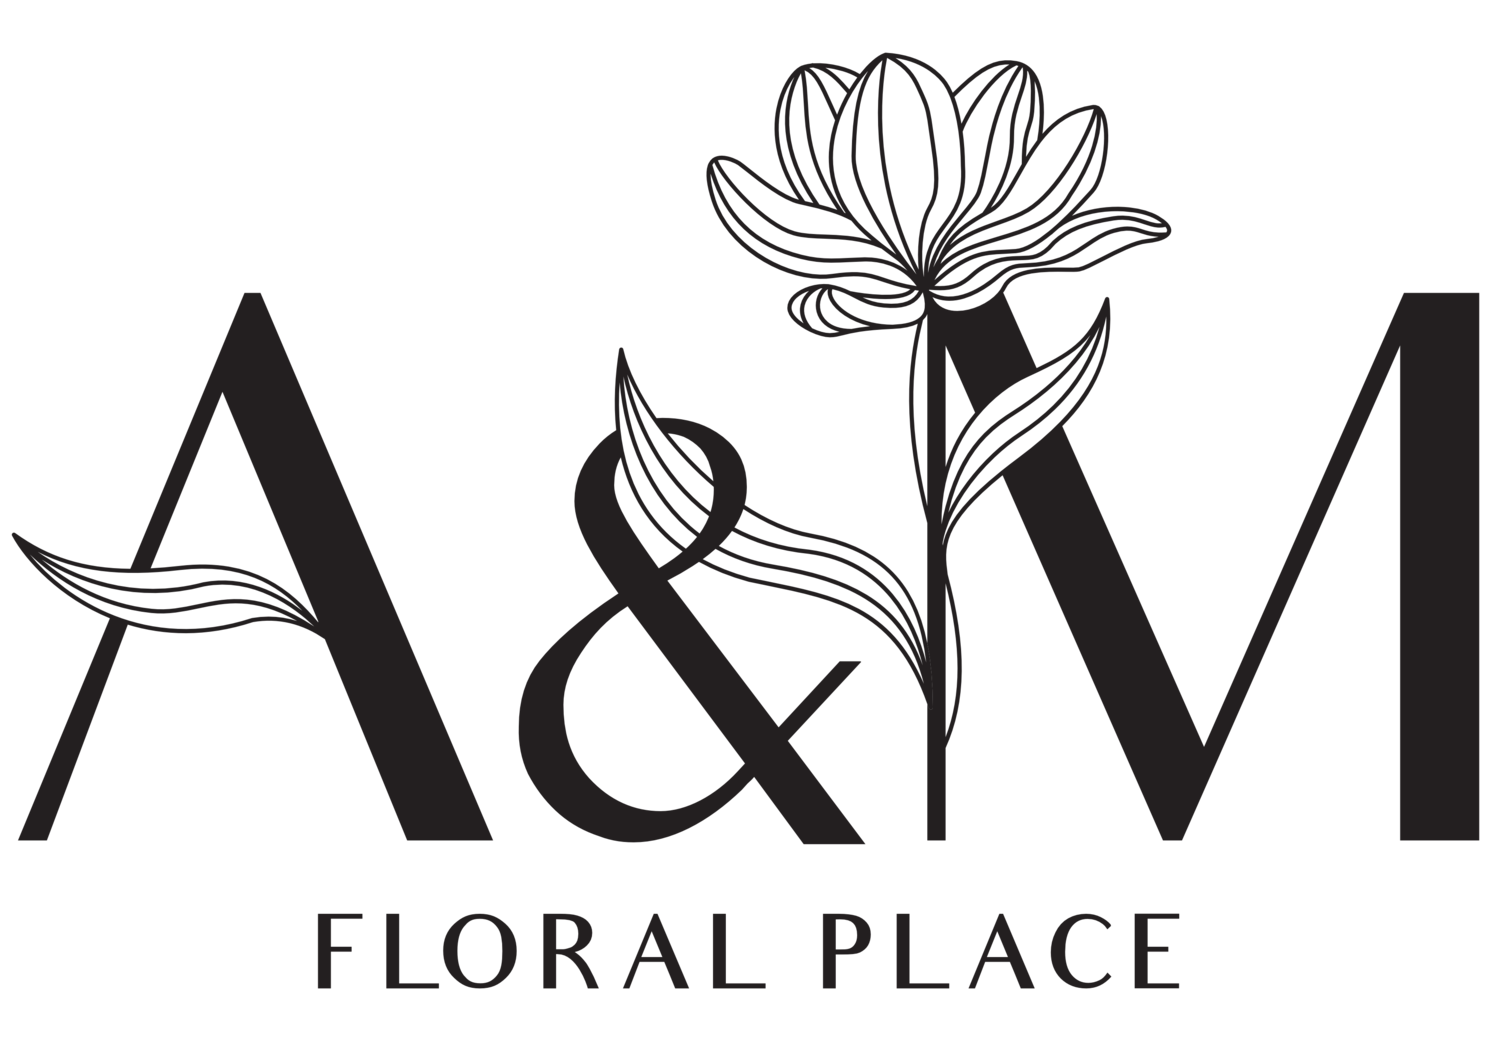 A&amp;M Floral Place